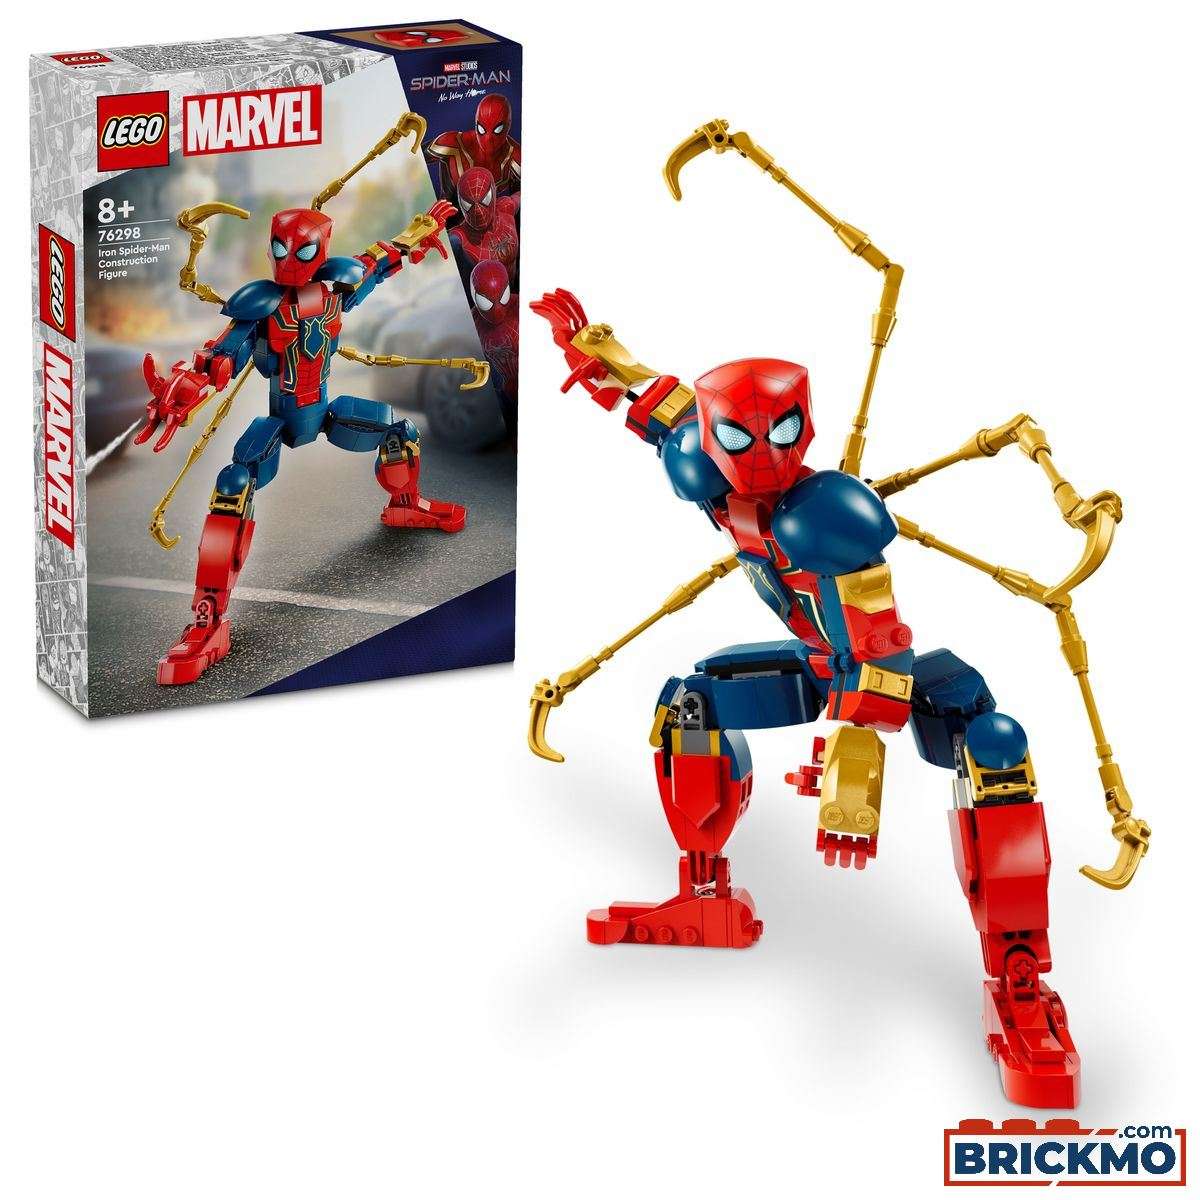 LEGO Marvel Super Heroes 76298 Personaggio costruibile di Iron Spider-Man 76298